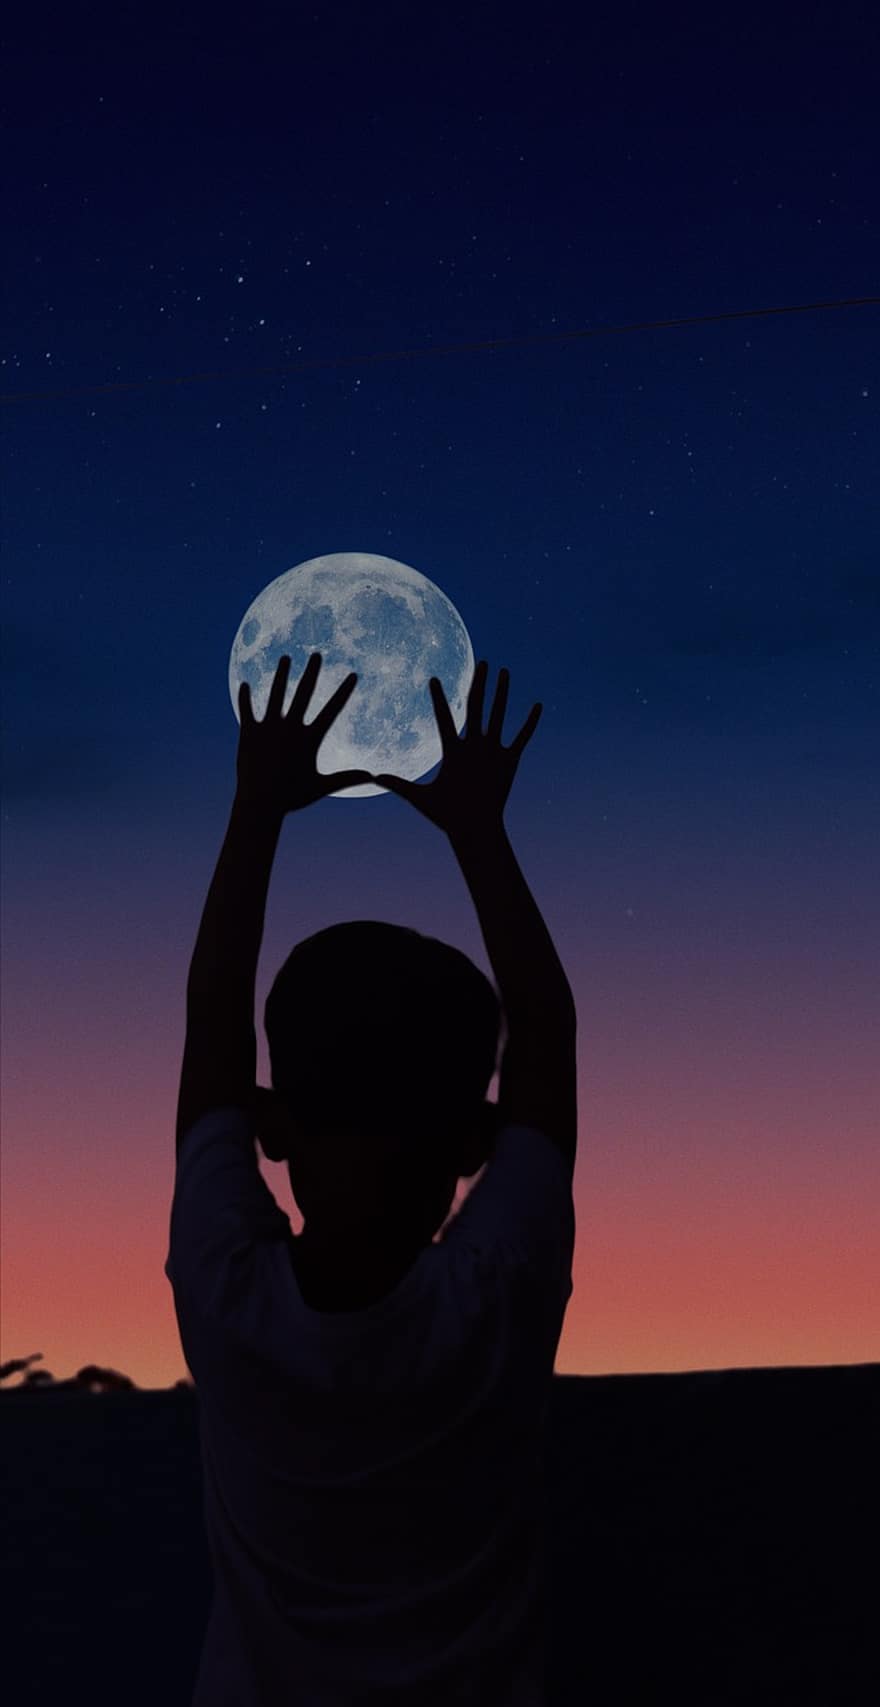 القمر ، طفل ، ليل ، اليدين ، دوم ، خيال ، البدر ، اصطياد القمر ، ضوء القمر